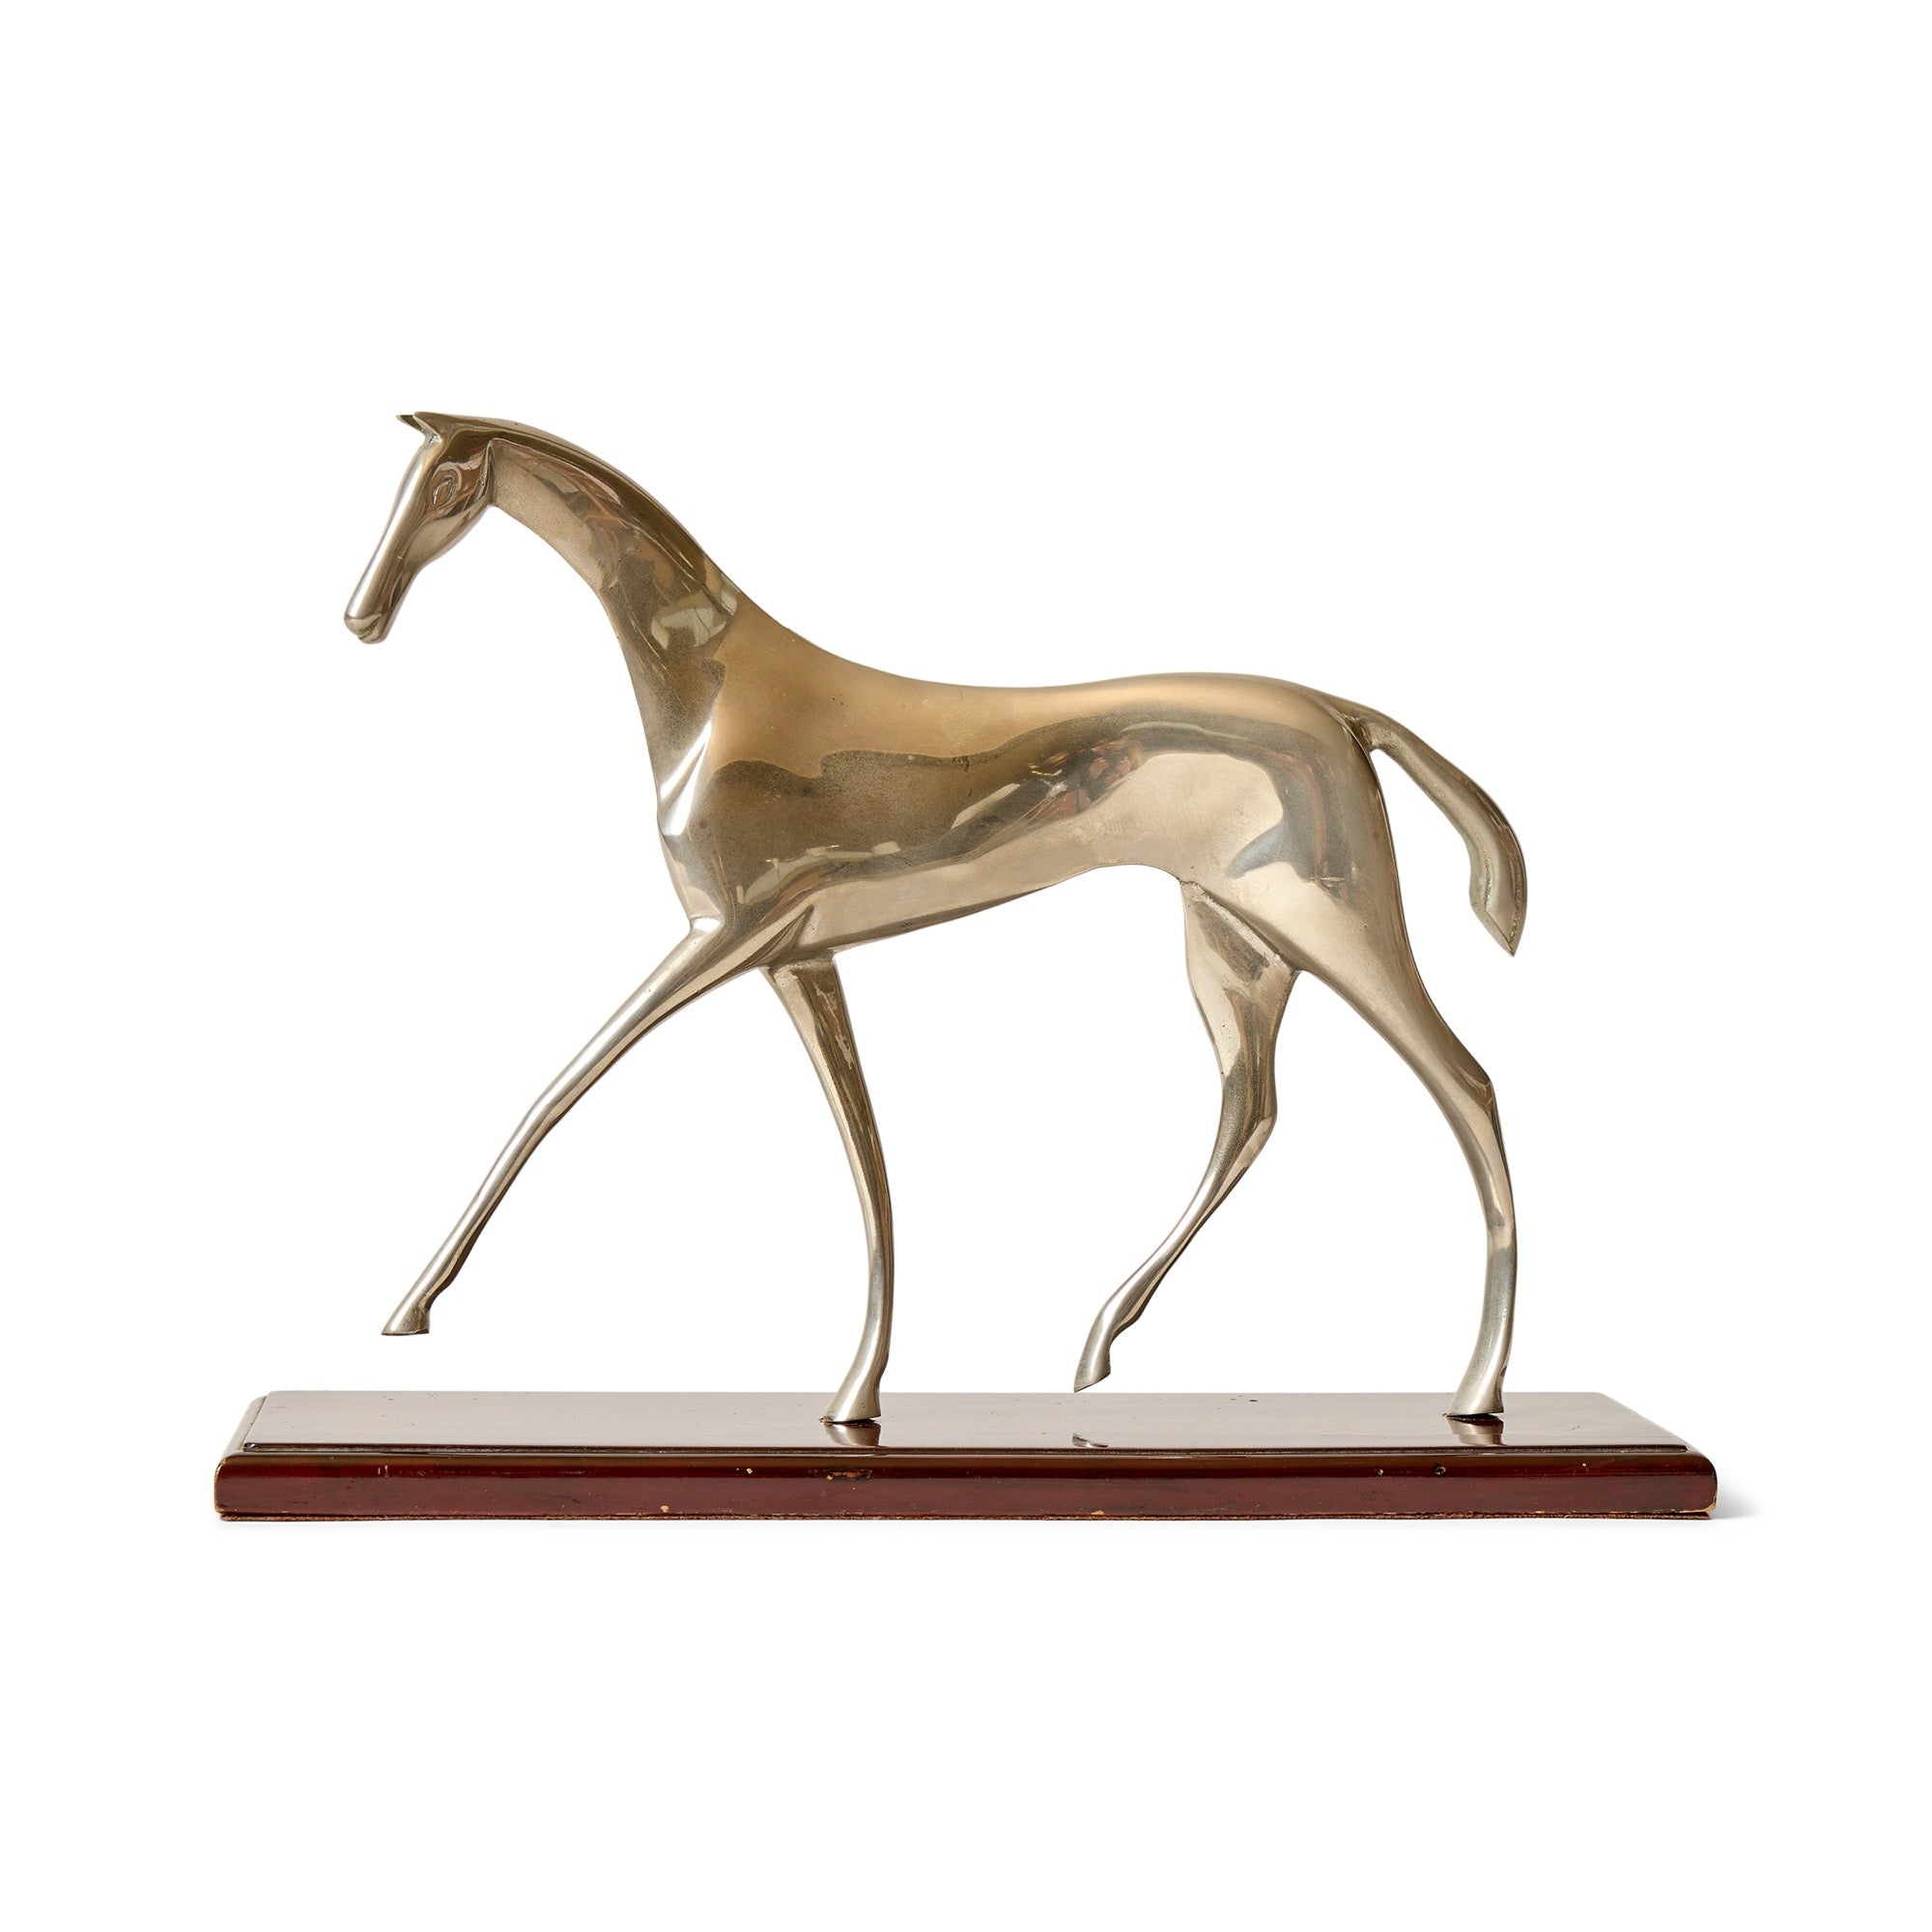 Modernist Horse Sculpture by Karl Hagenauer for Hagenauer Workshop, 1940's